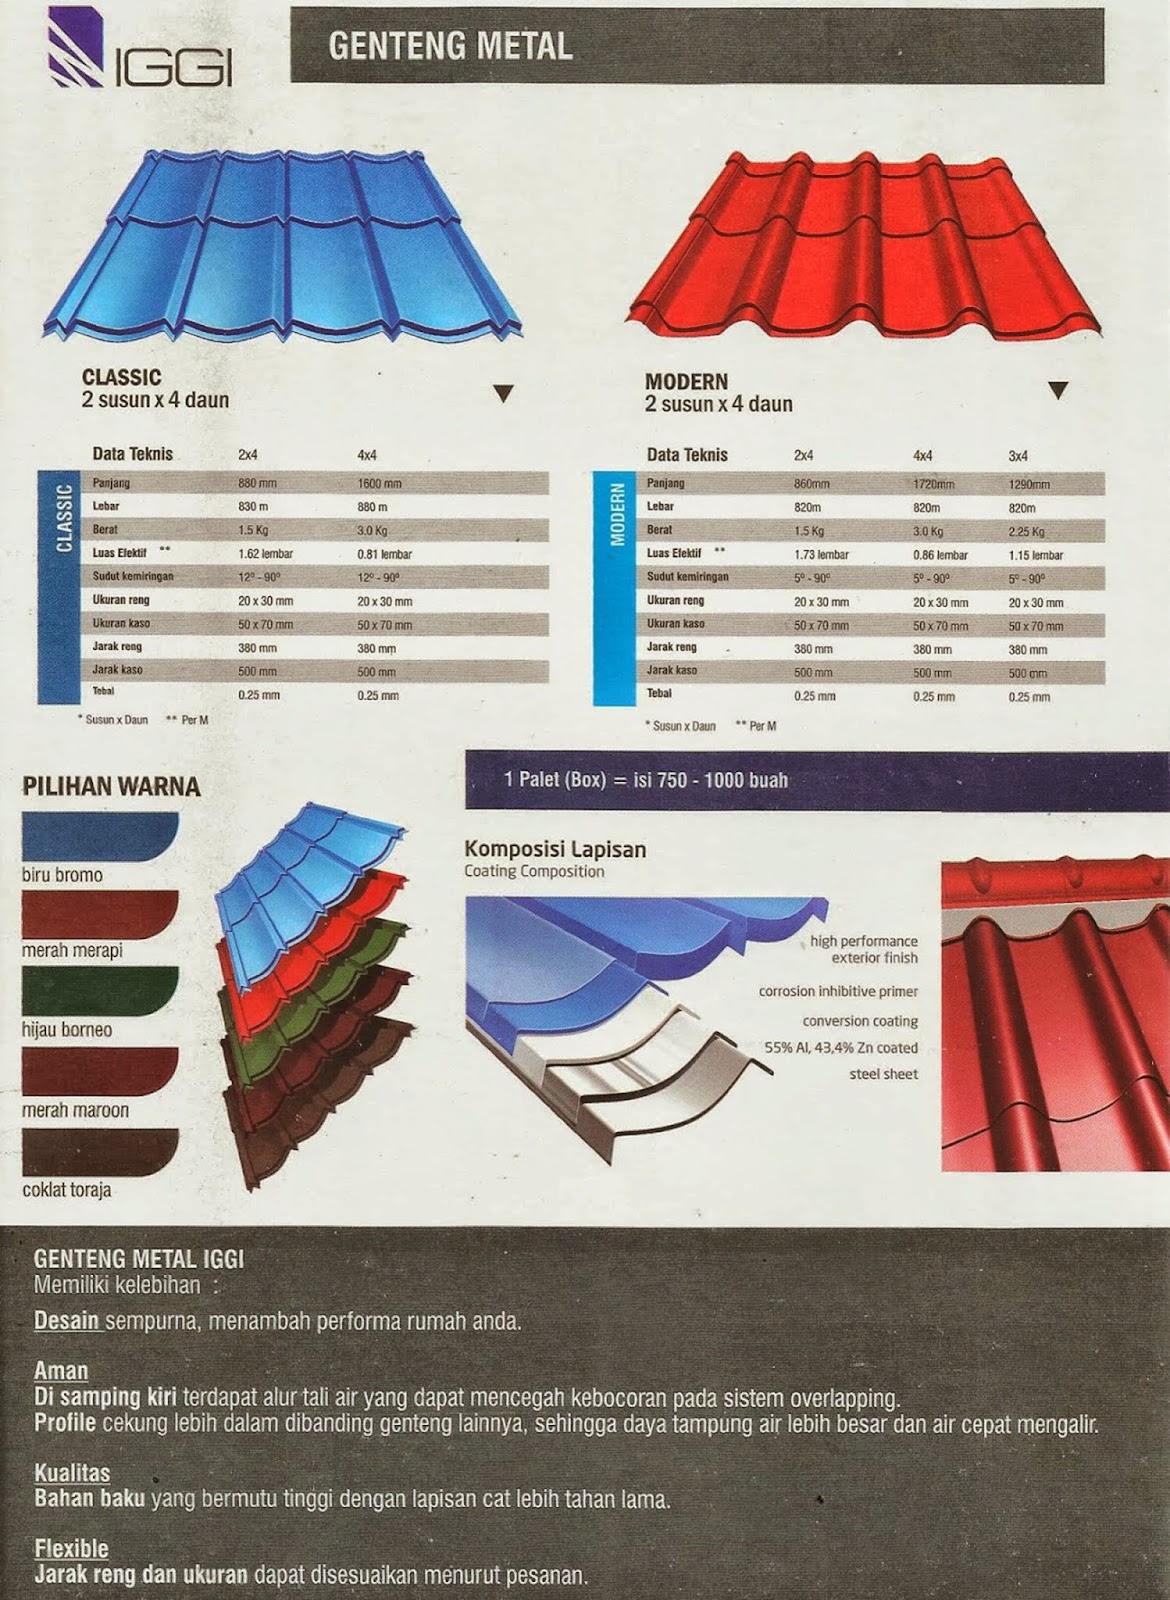 Harga Genteng Metal Iggi Roof Terbaru 2018 - CV CAHAYA 